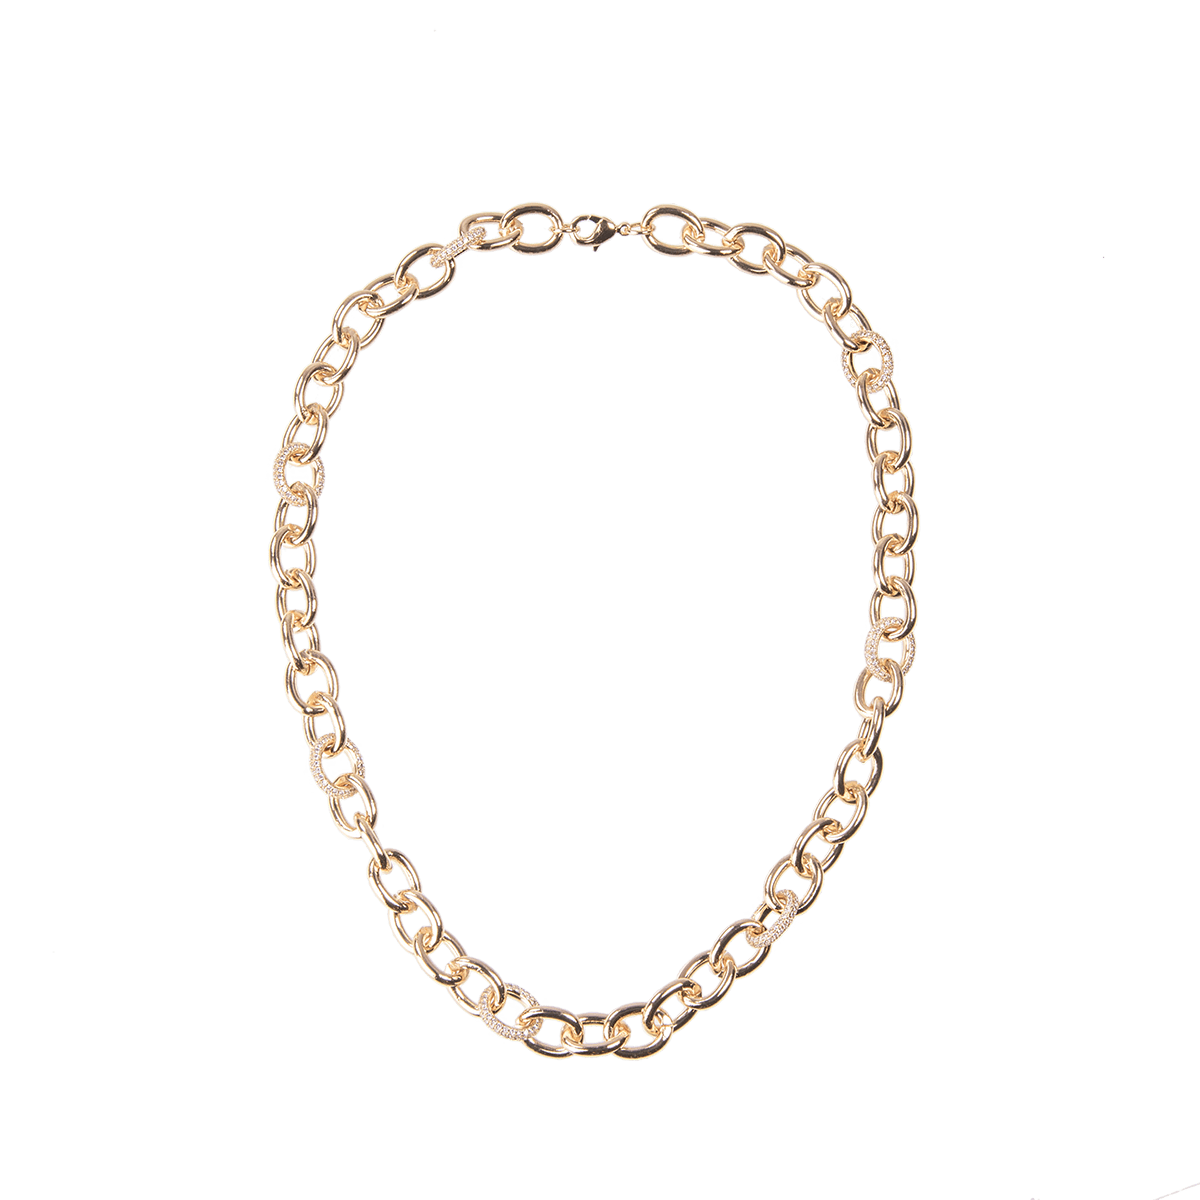 Emilia by Bon Dep Chain Necklace Luxe 45 cm